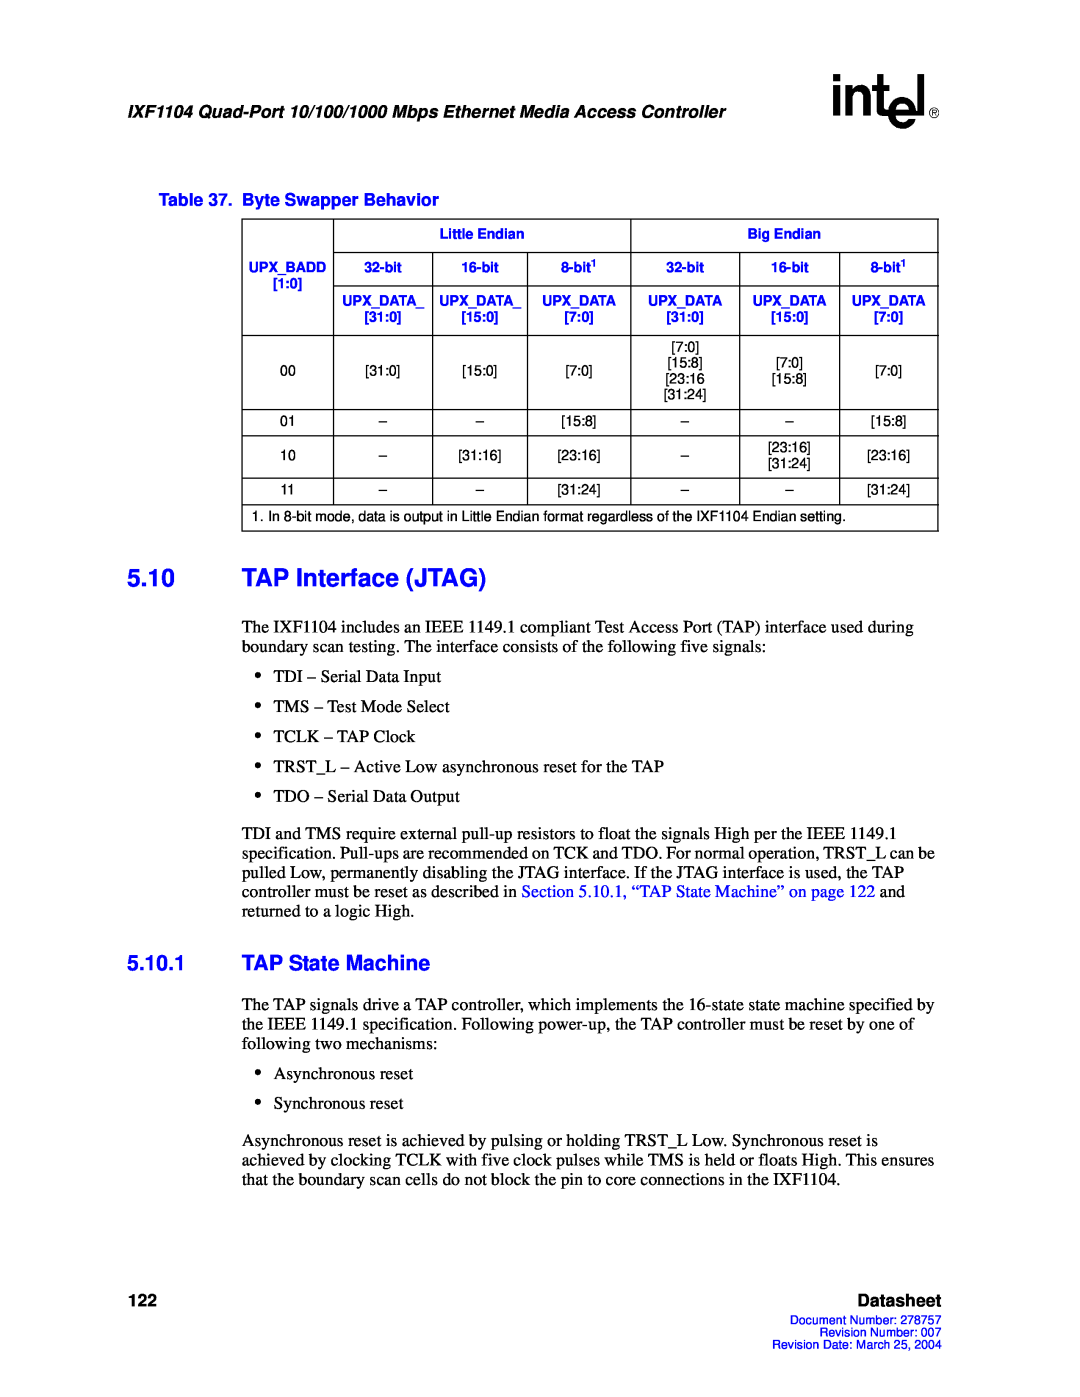 Intel IXF1104 manual 5.10TAP Interface JTAG, 5.10.1TAP State Machine, Datasheet 